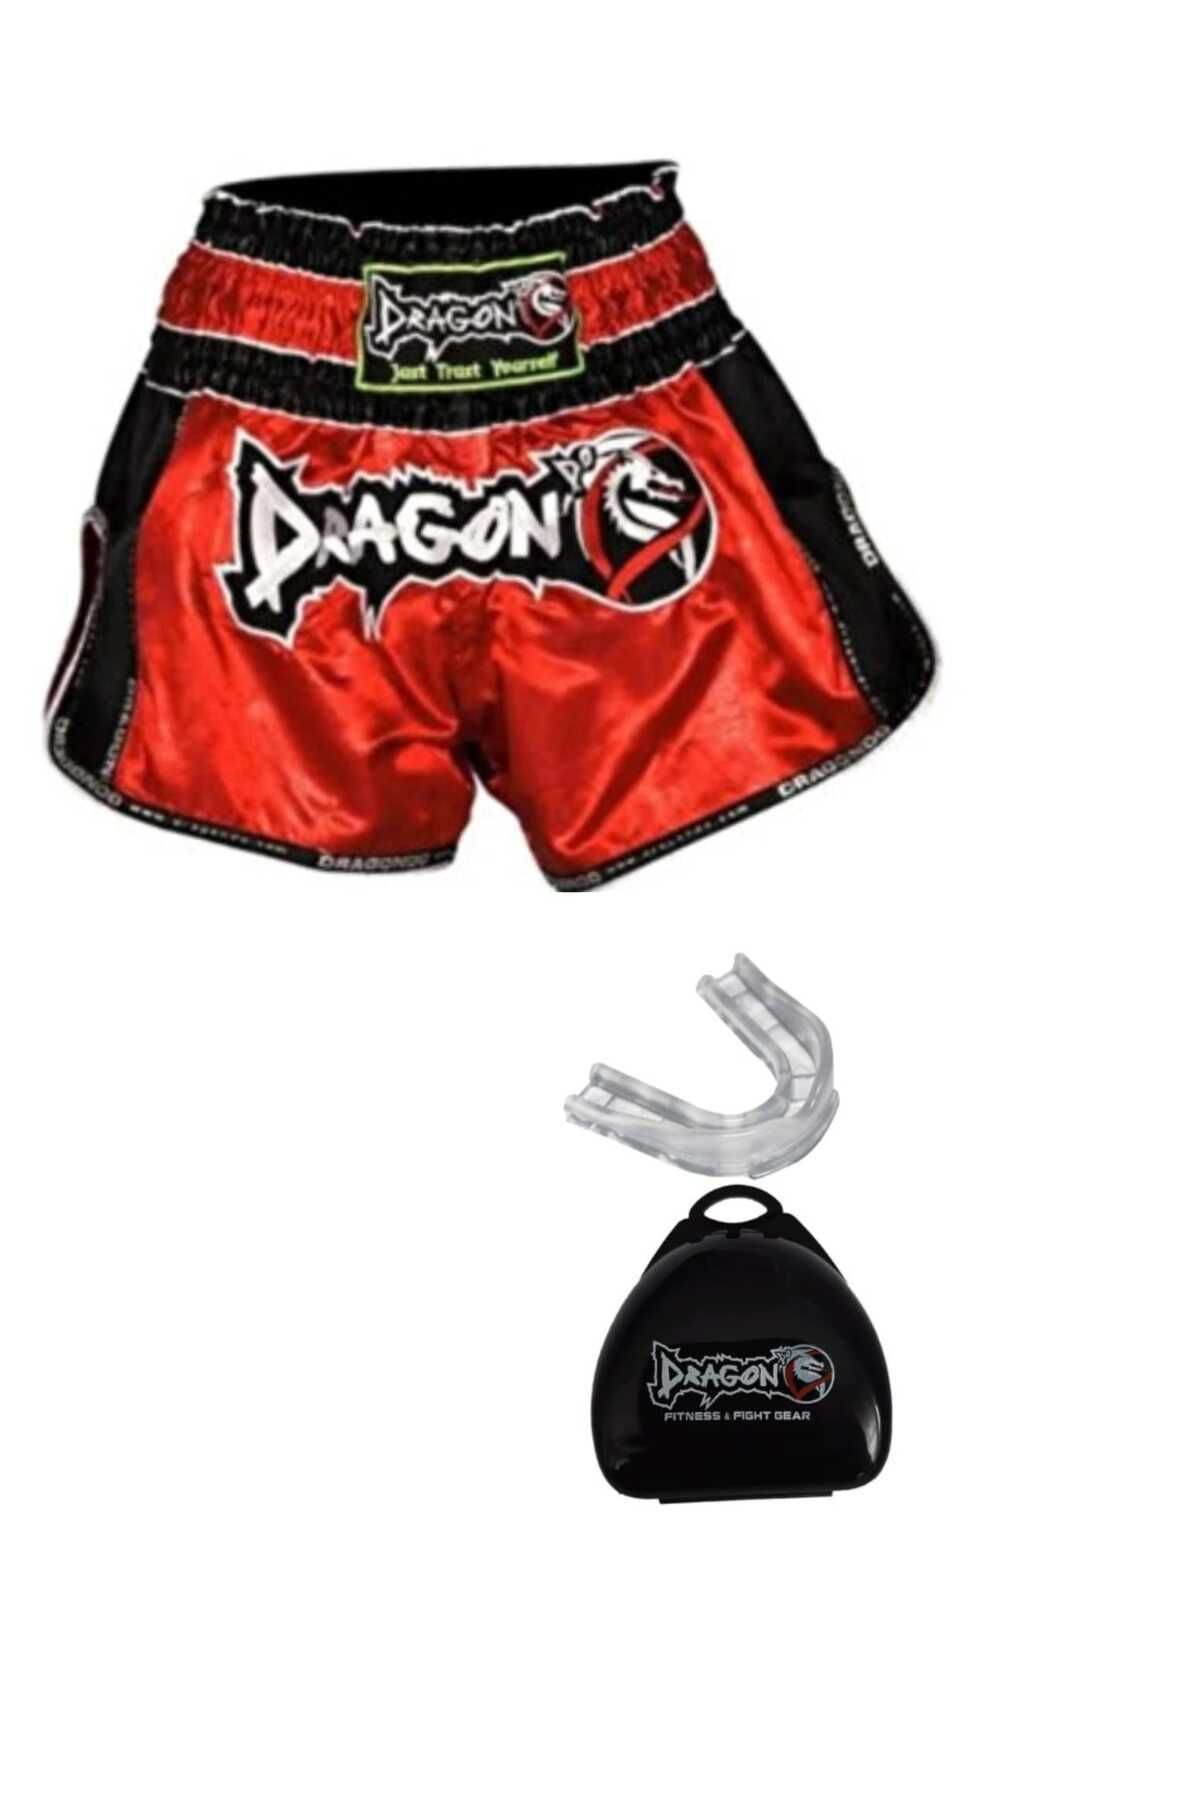 Dragon Sporcu Dişliği ve Retro Şort Muay Thai Mt3075